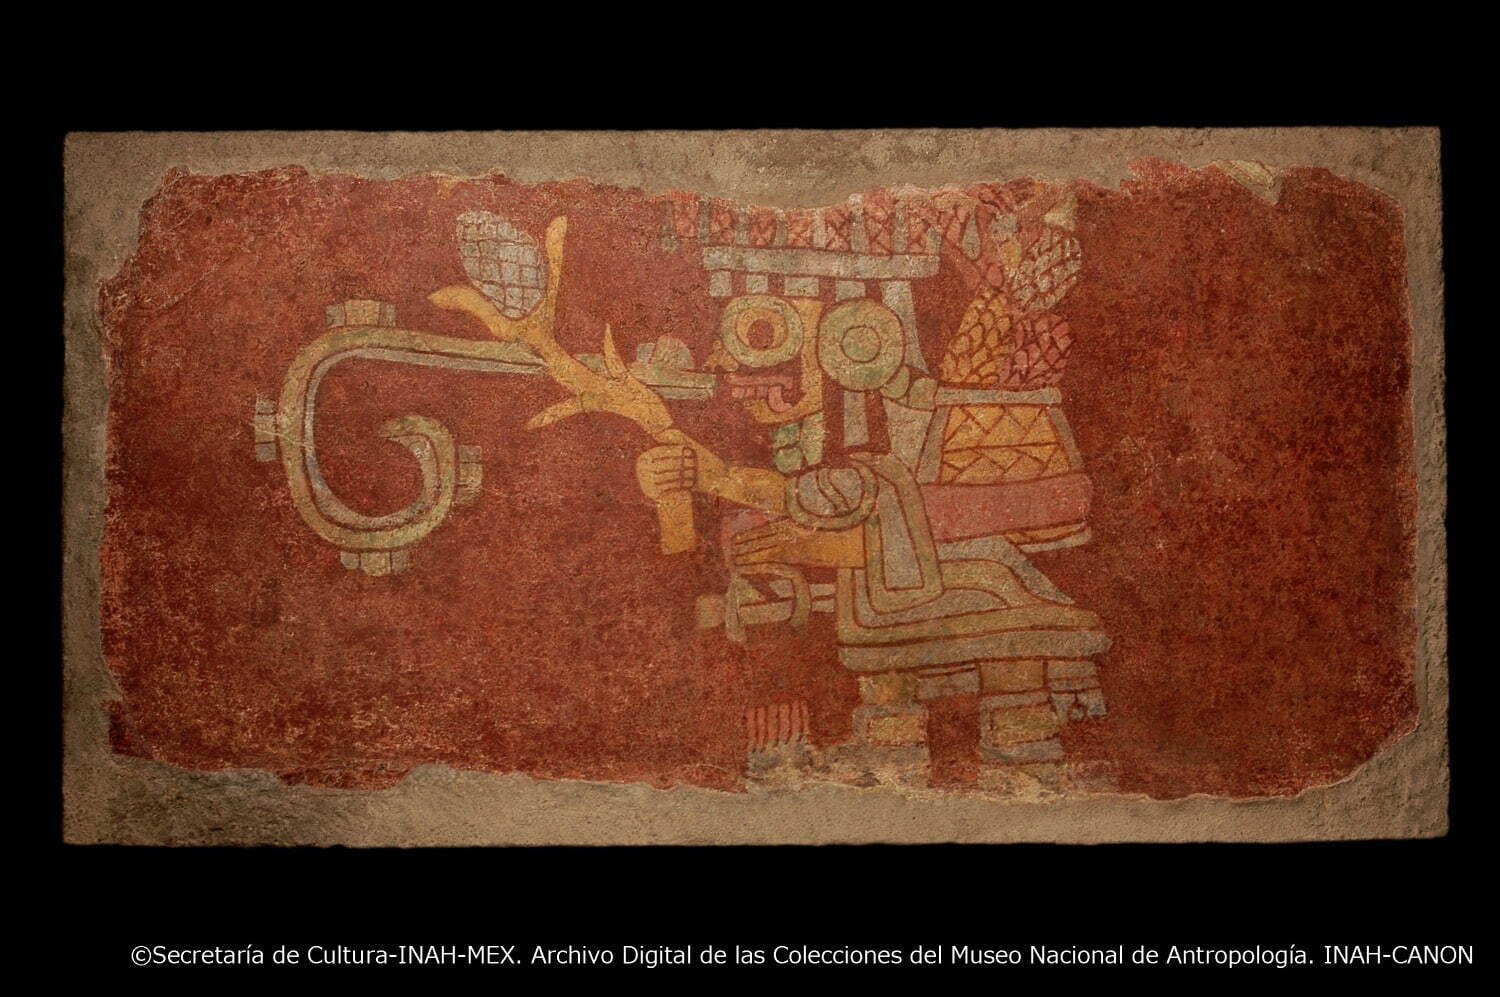 嵐の神の壁画
テオティワカン文明 350-550年 テオティワカン、サクアラ出土
メキシコ国立人類学博物館蔵